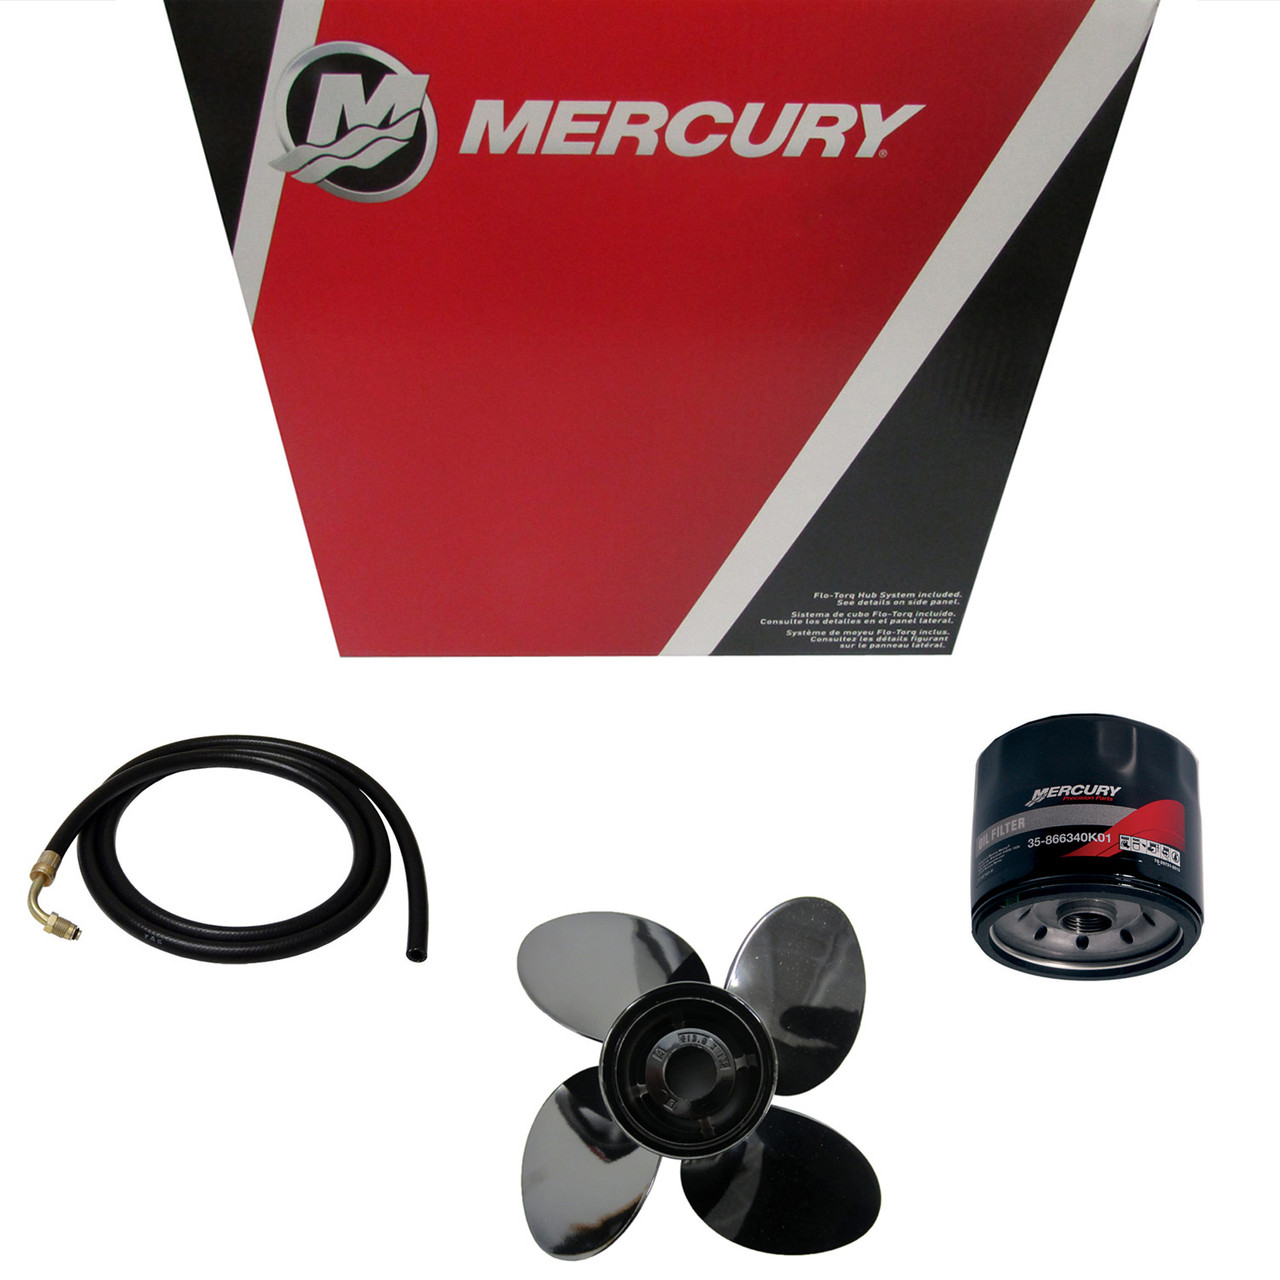 Mercury Marine / Mercruiser New OEM Carburetor, 3319-804708T1